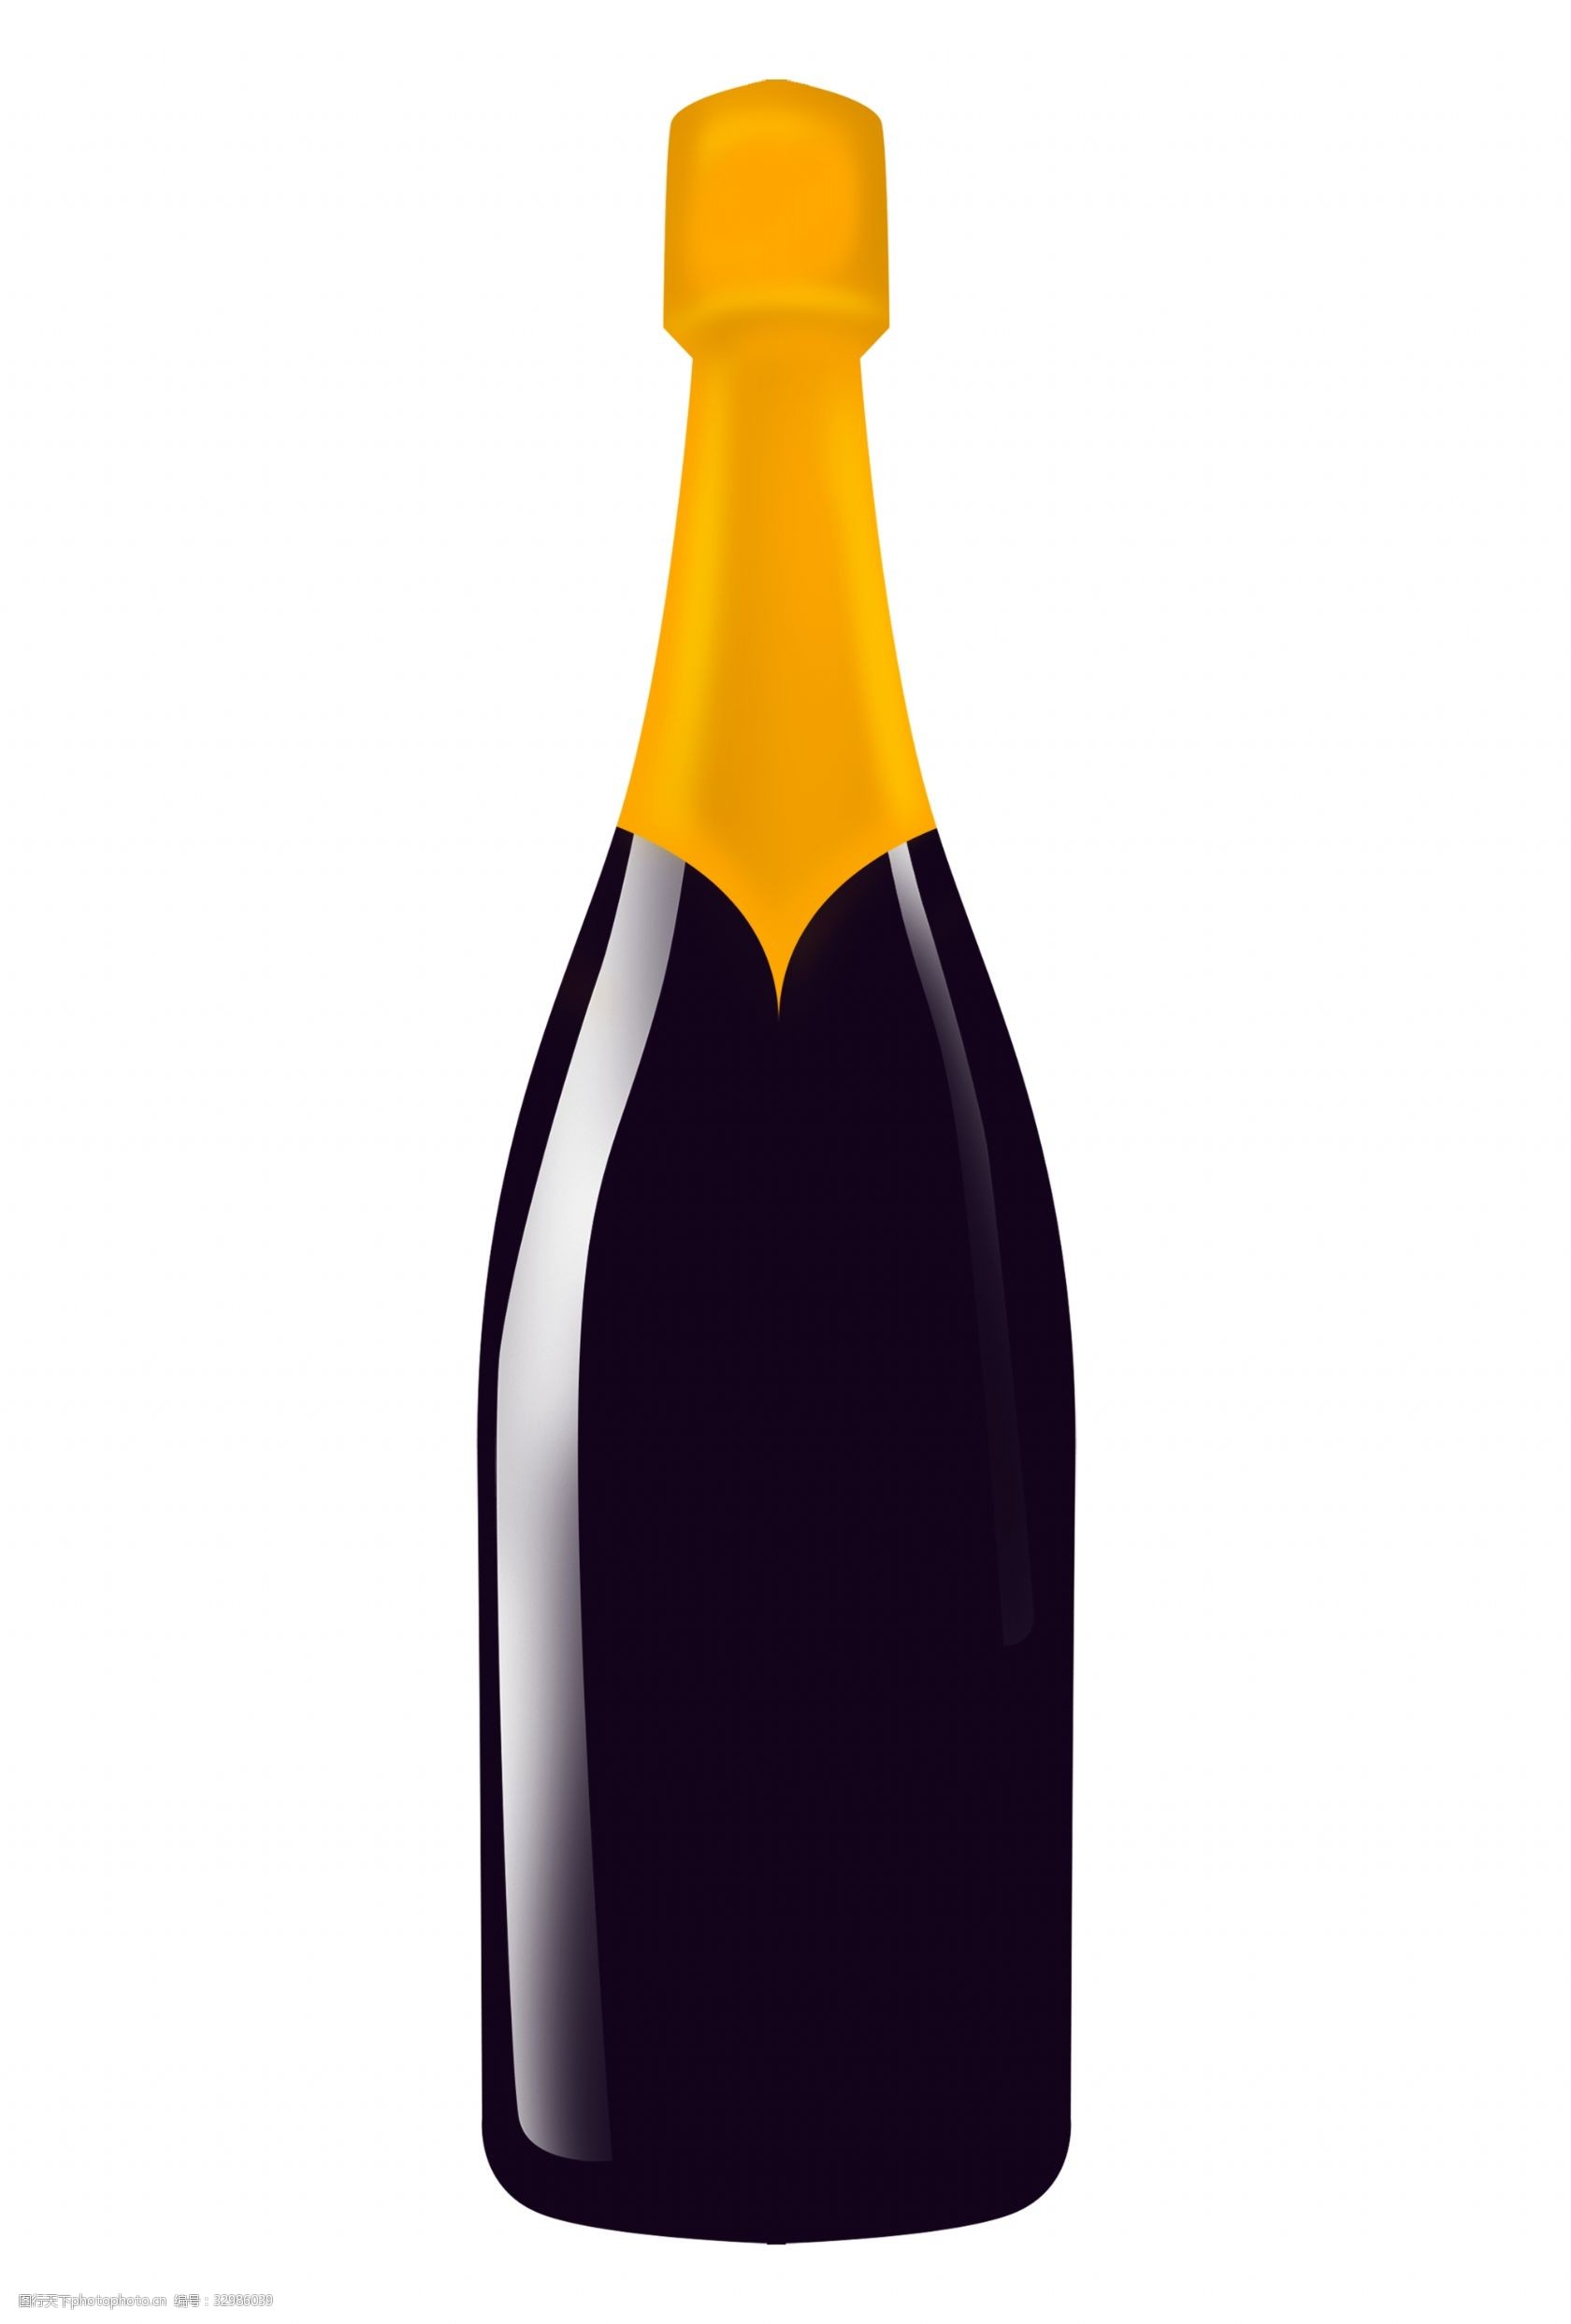 关键词:一瓶黑色红酒插画 黄色酒瓶盖子 黑色瓶子 红酒瓶子插画 红酒